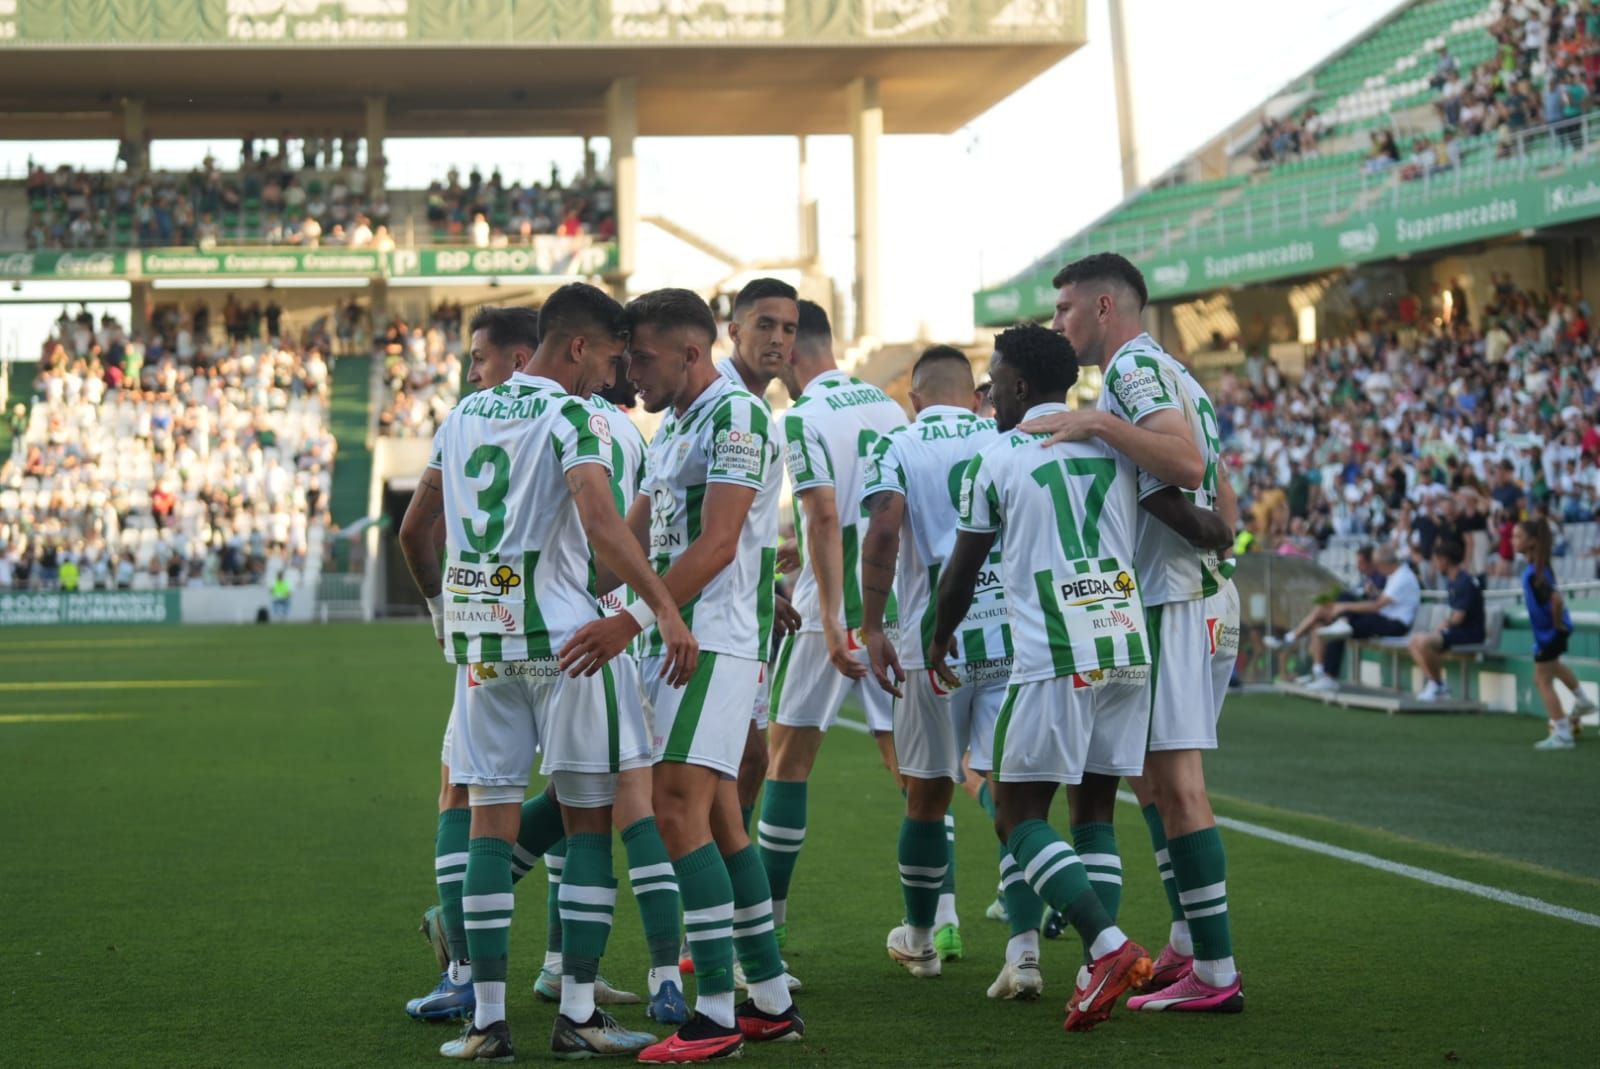 Córdoba CF-Sanluqueño: el partido en imágenes